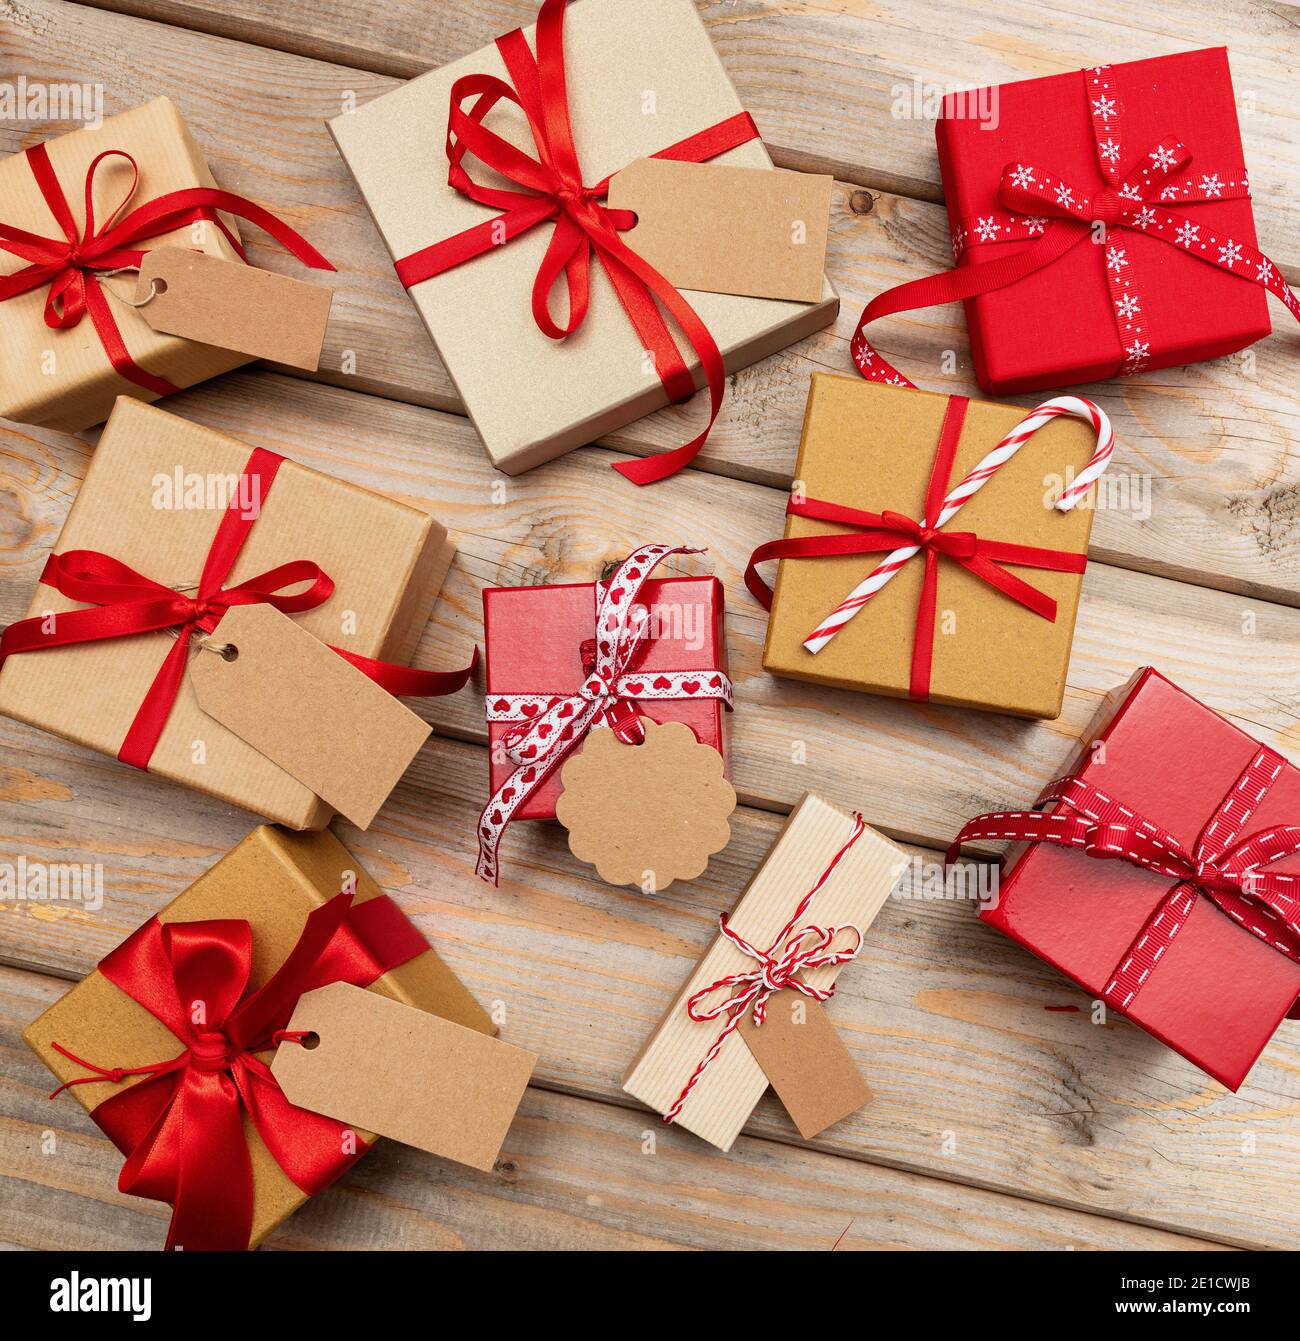 Cajas de regalo de Navidad con etiquetas en blanco sobre fondo de madera.  Lay plano de los paquetes de regalo hechos a mano, papel para envolver  kraft, cinta roja. Ideal para Navidad